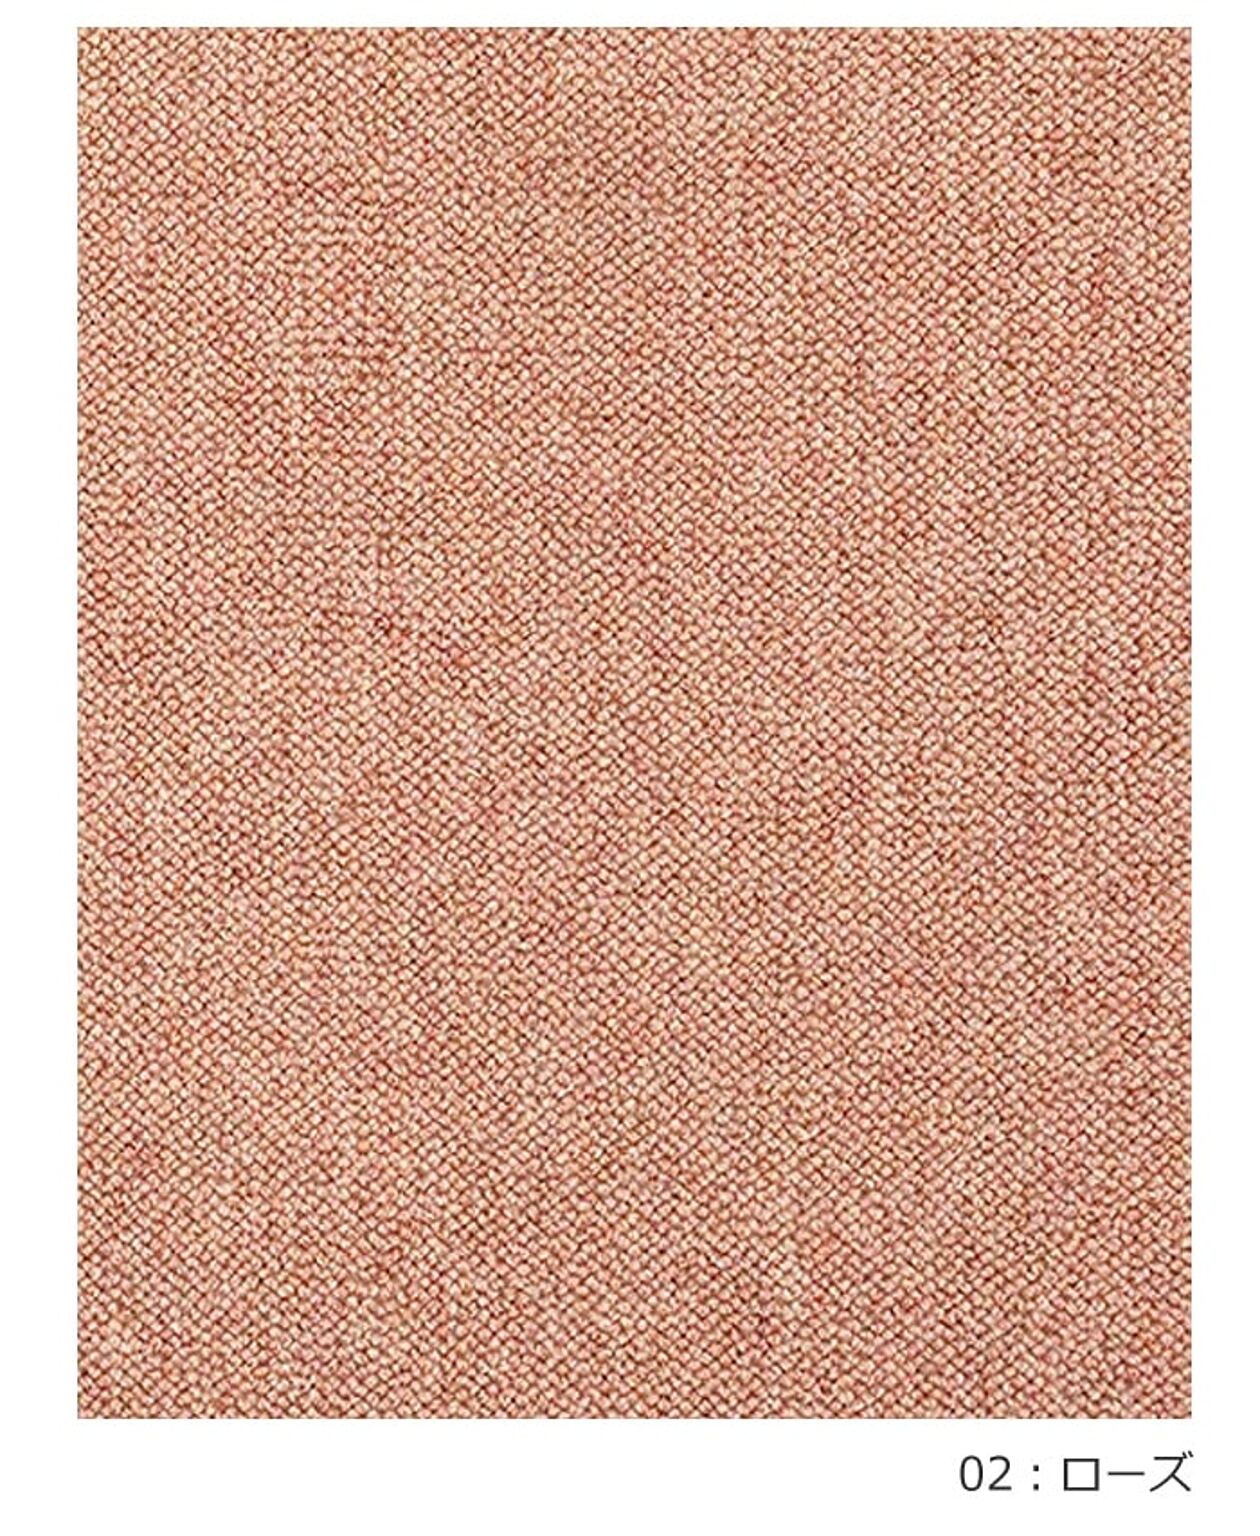 ラグ ラグマット 絨毯 日本製 防炎 防音 ウール100% カーペット prevell プレーベル リンクス 江戸間3畳 約176×261cm 無地 北欧 デザイン おしゃれな 引っ越し 新生活